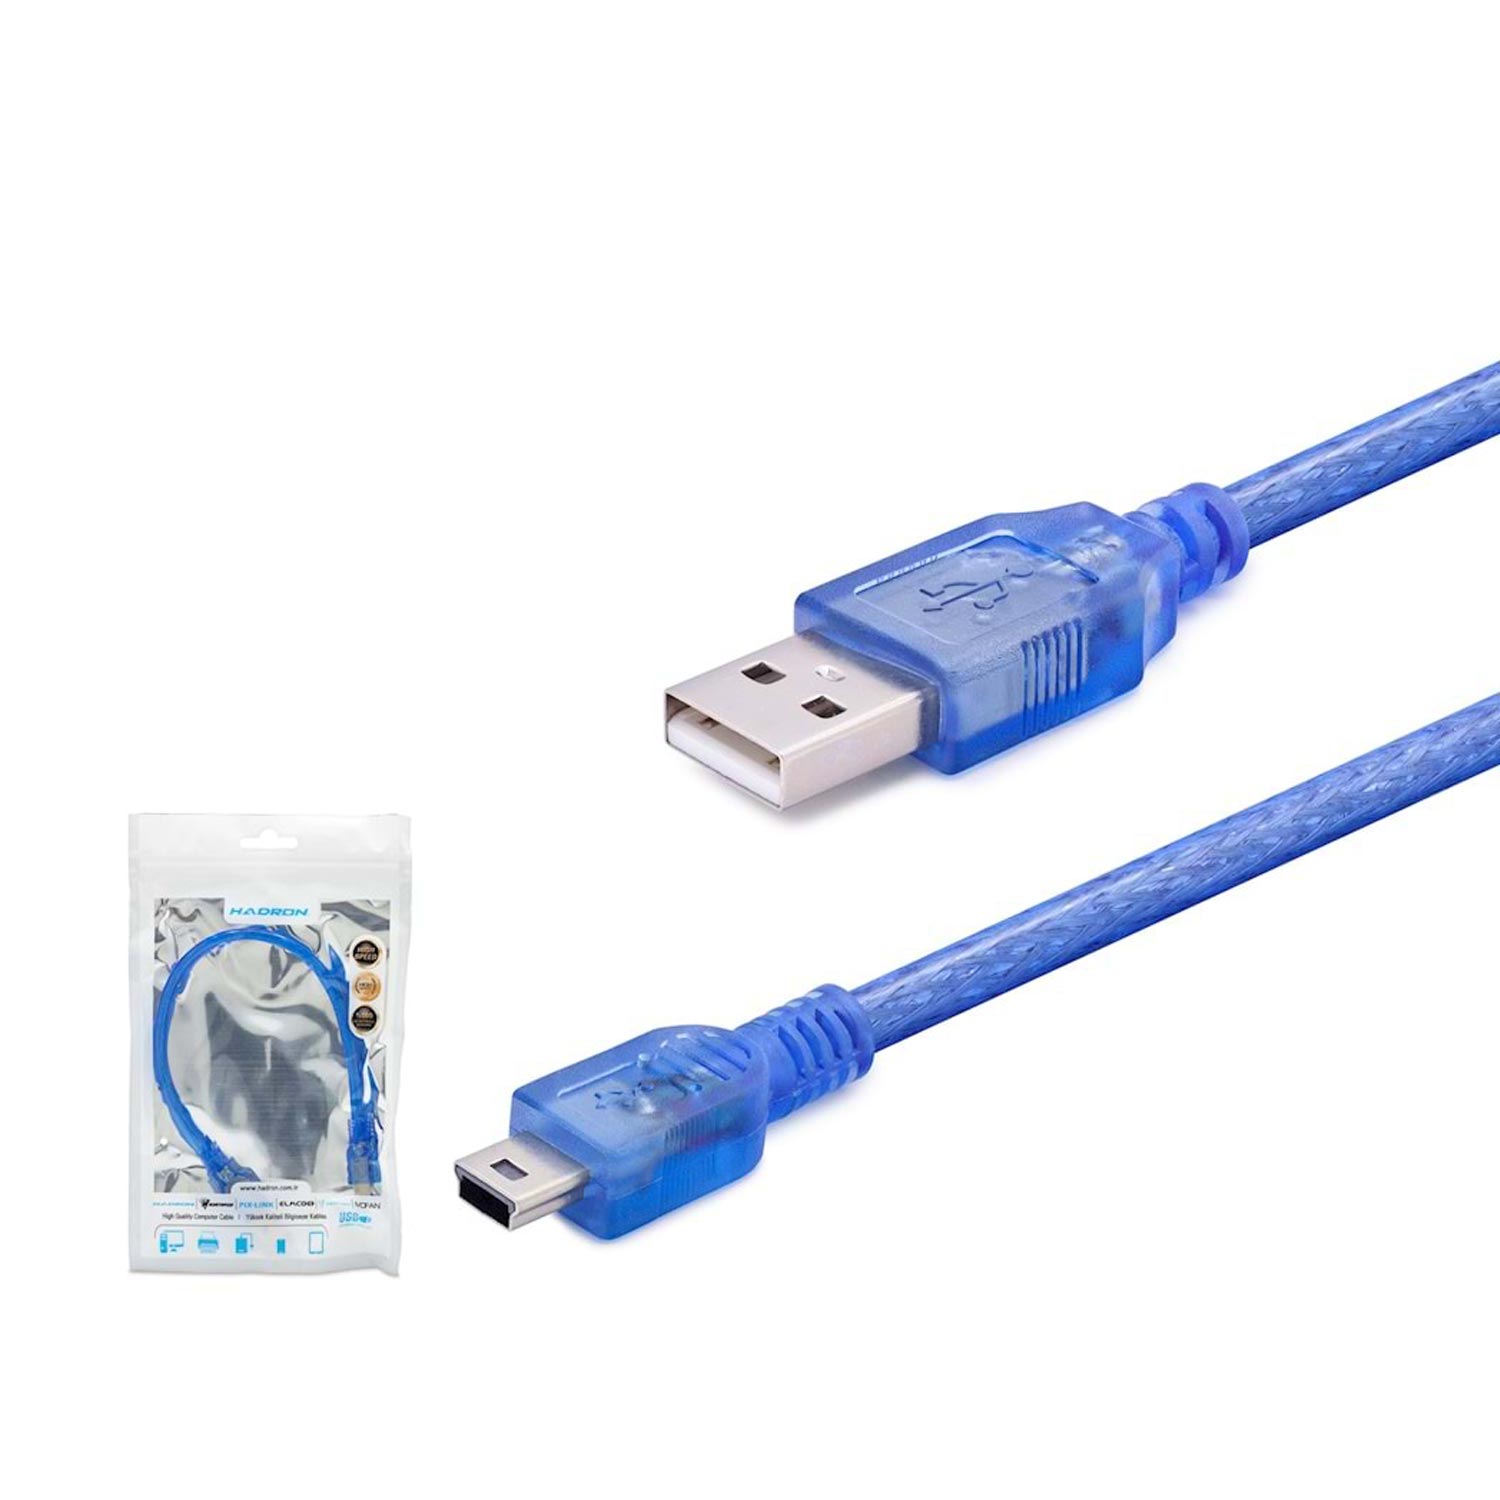 KABLO V3 5PIN TO USB 30CM HADRON HDX-7548